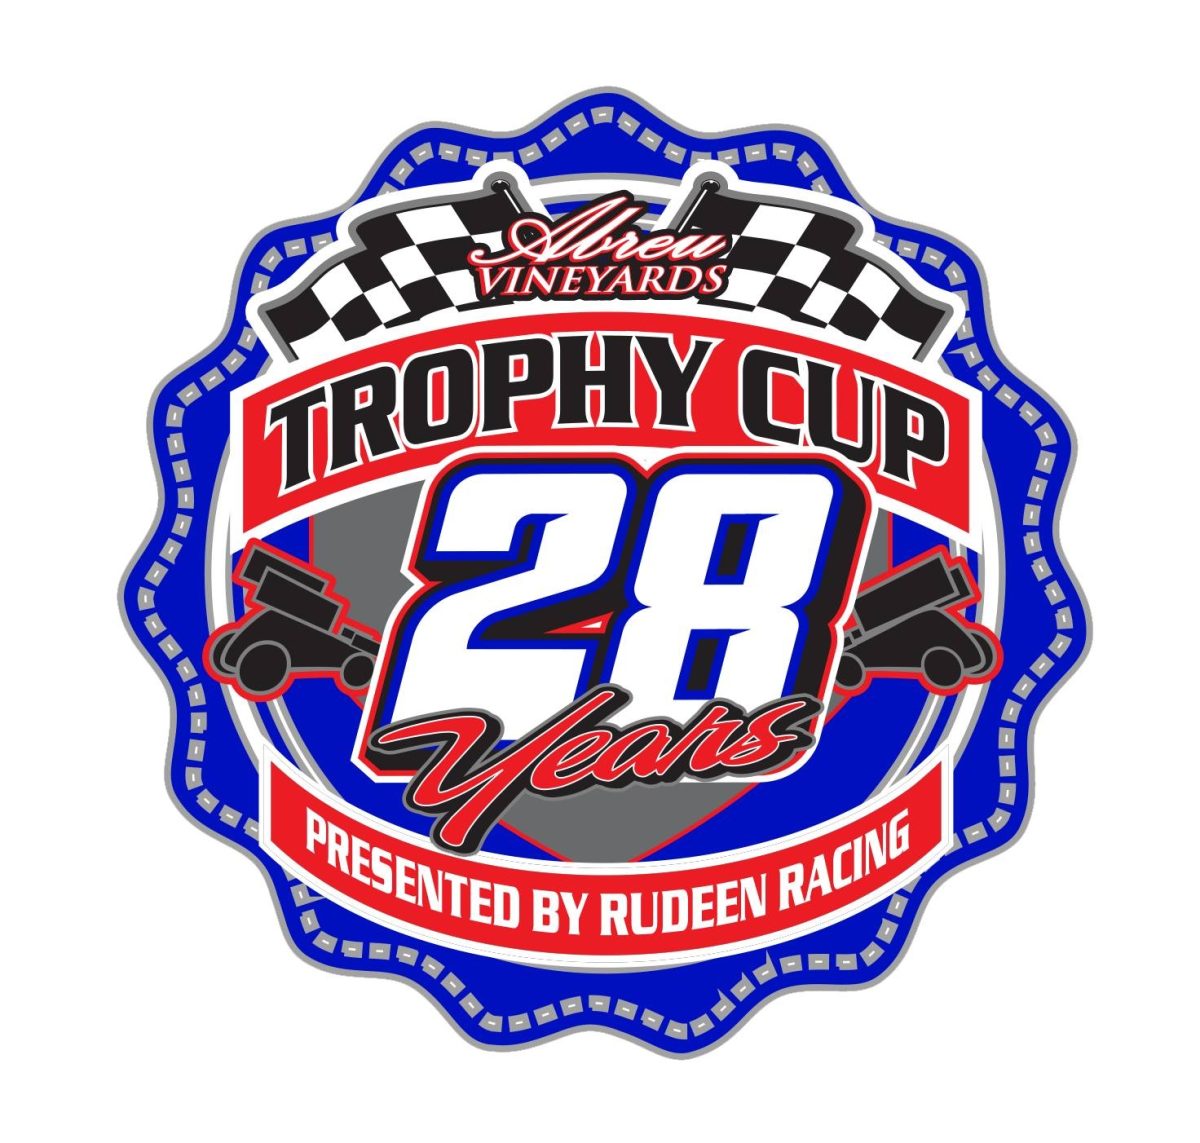 Trophy Cup 28